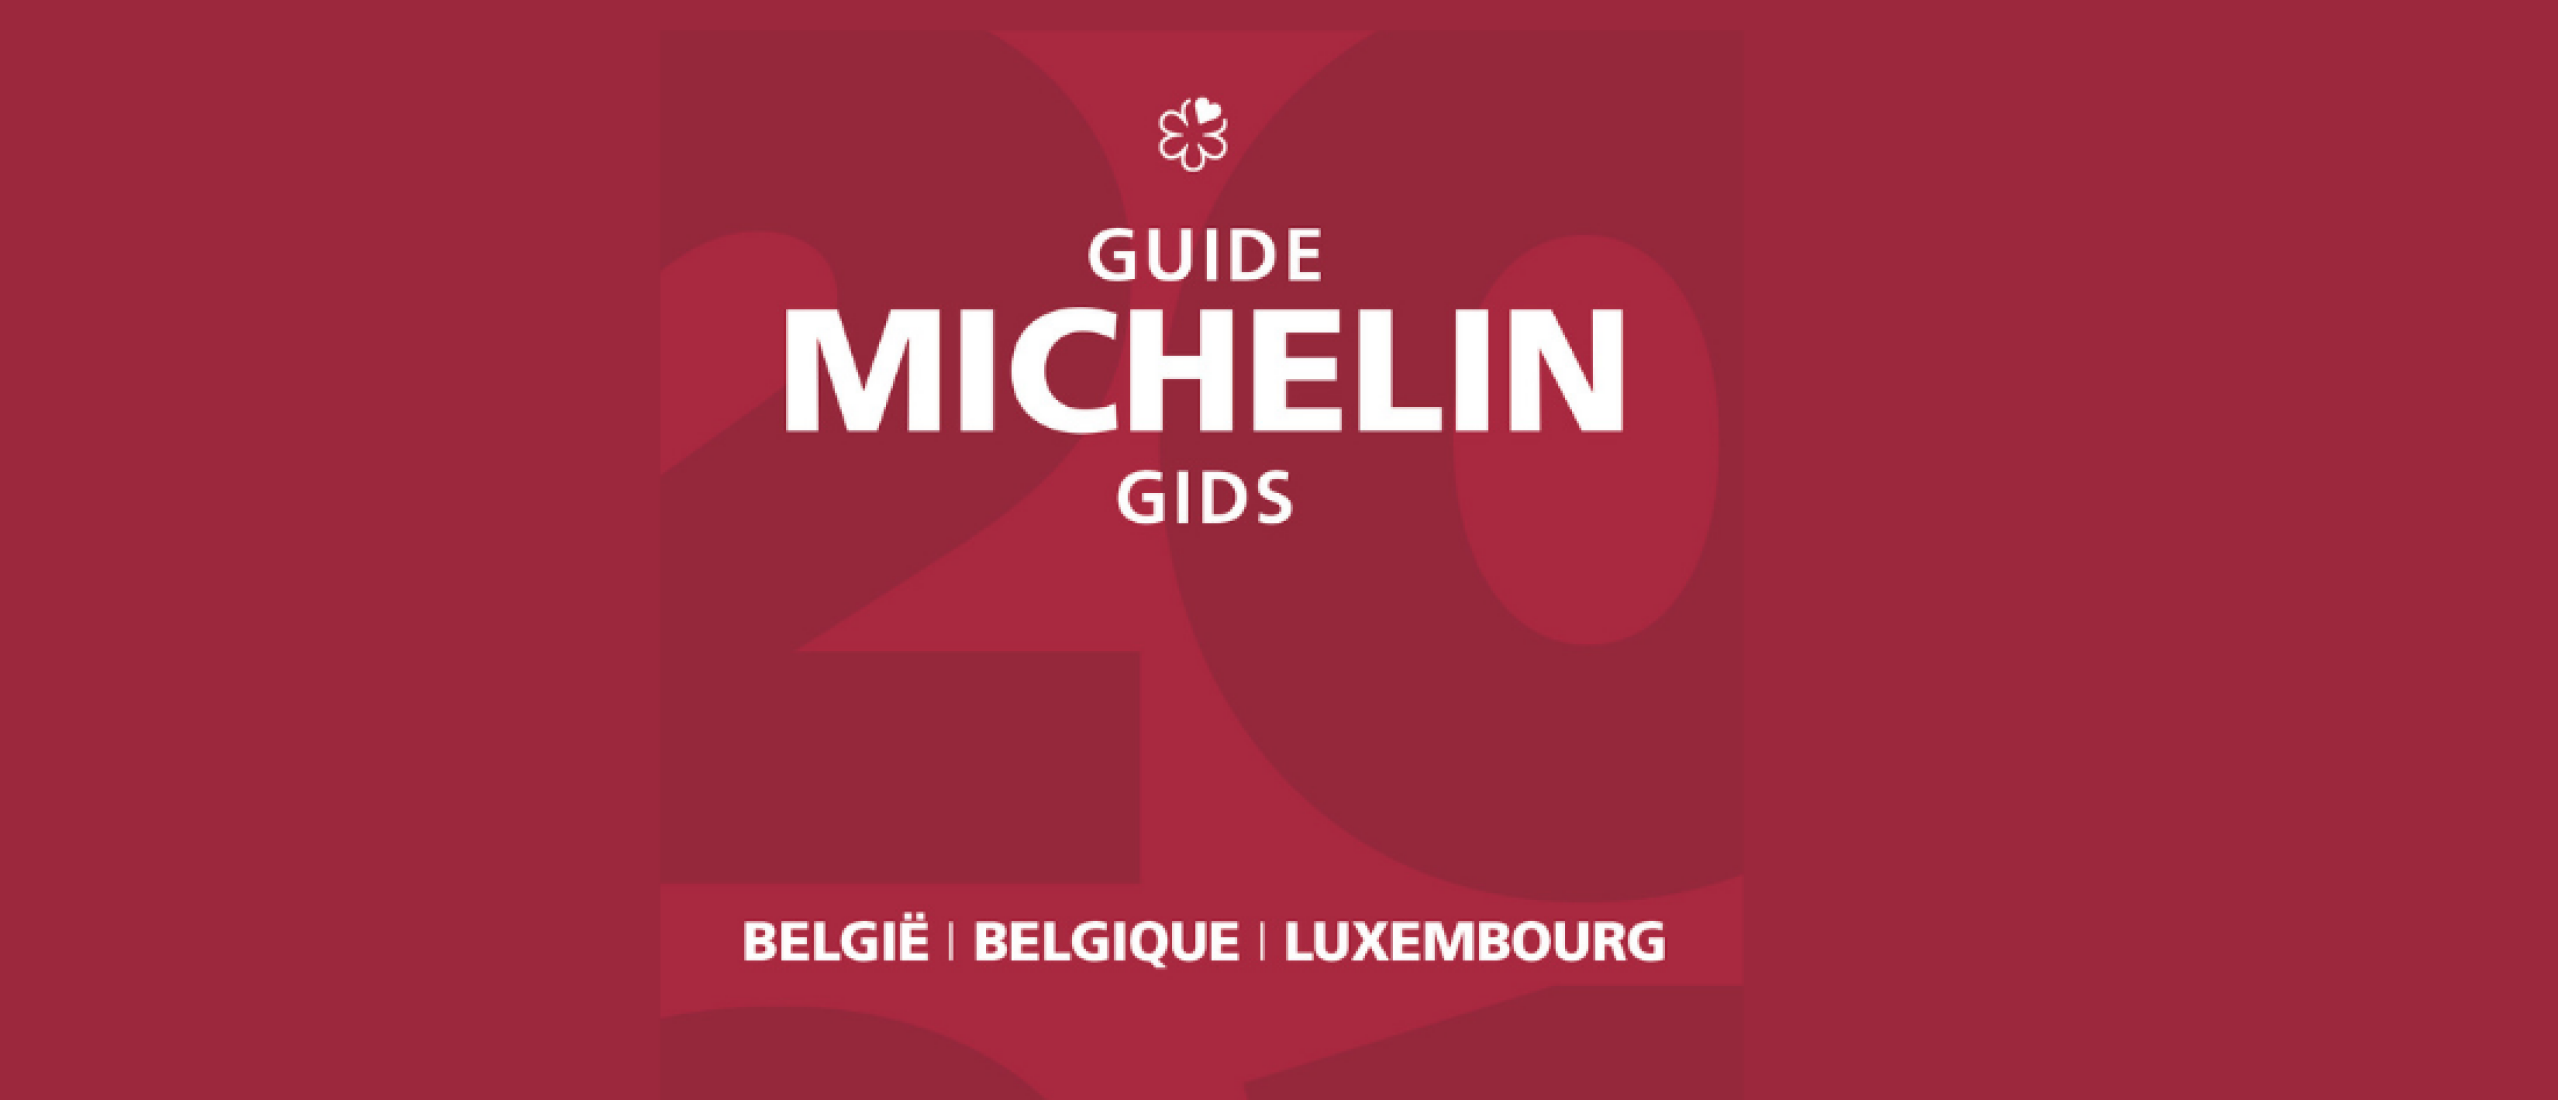 Lancering Michelinsterren België & Luxemburg 2022 uitgesteld naar 23 mei.